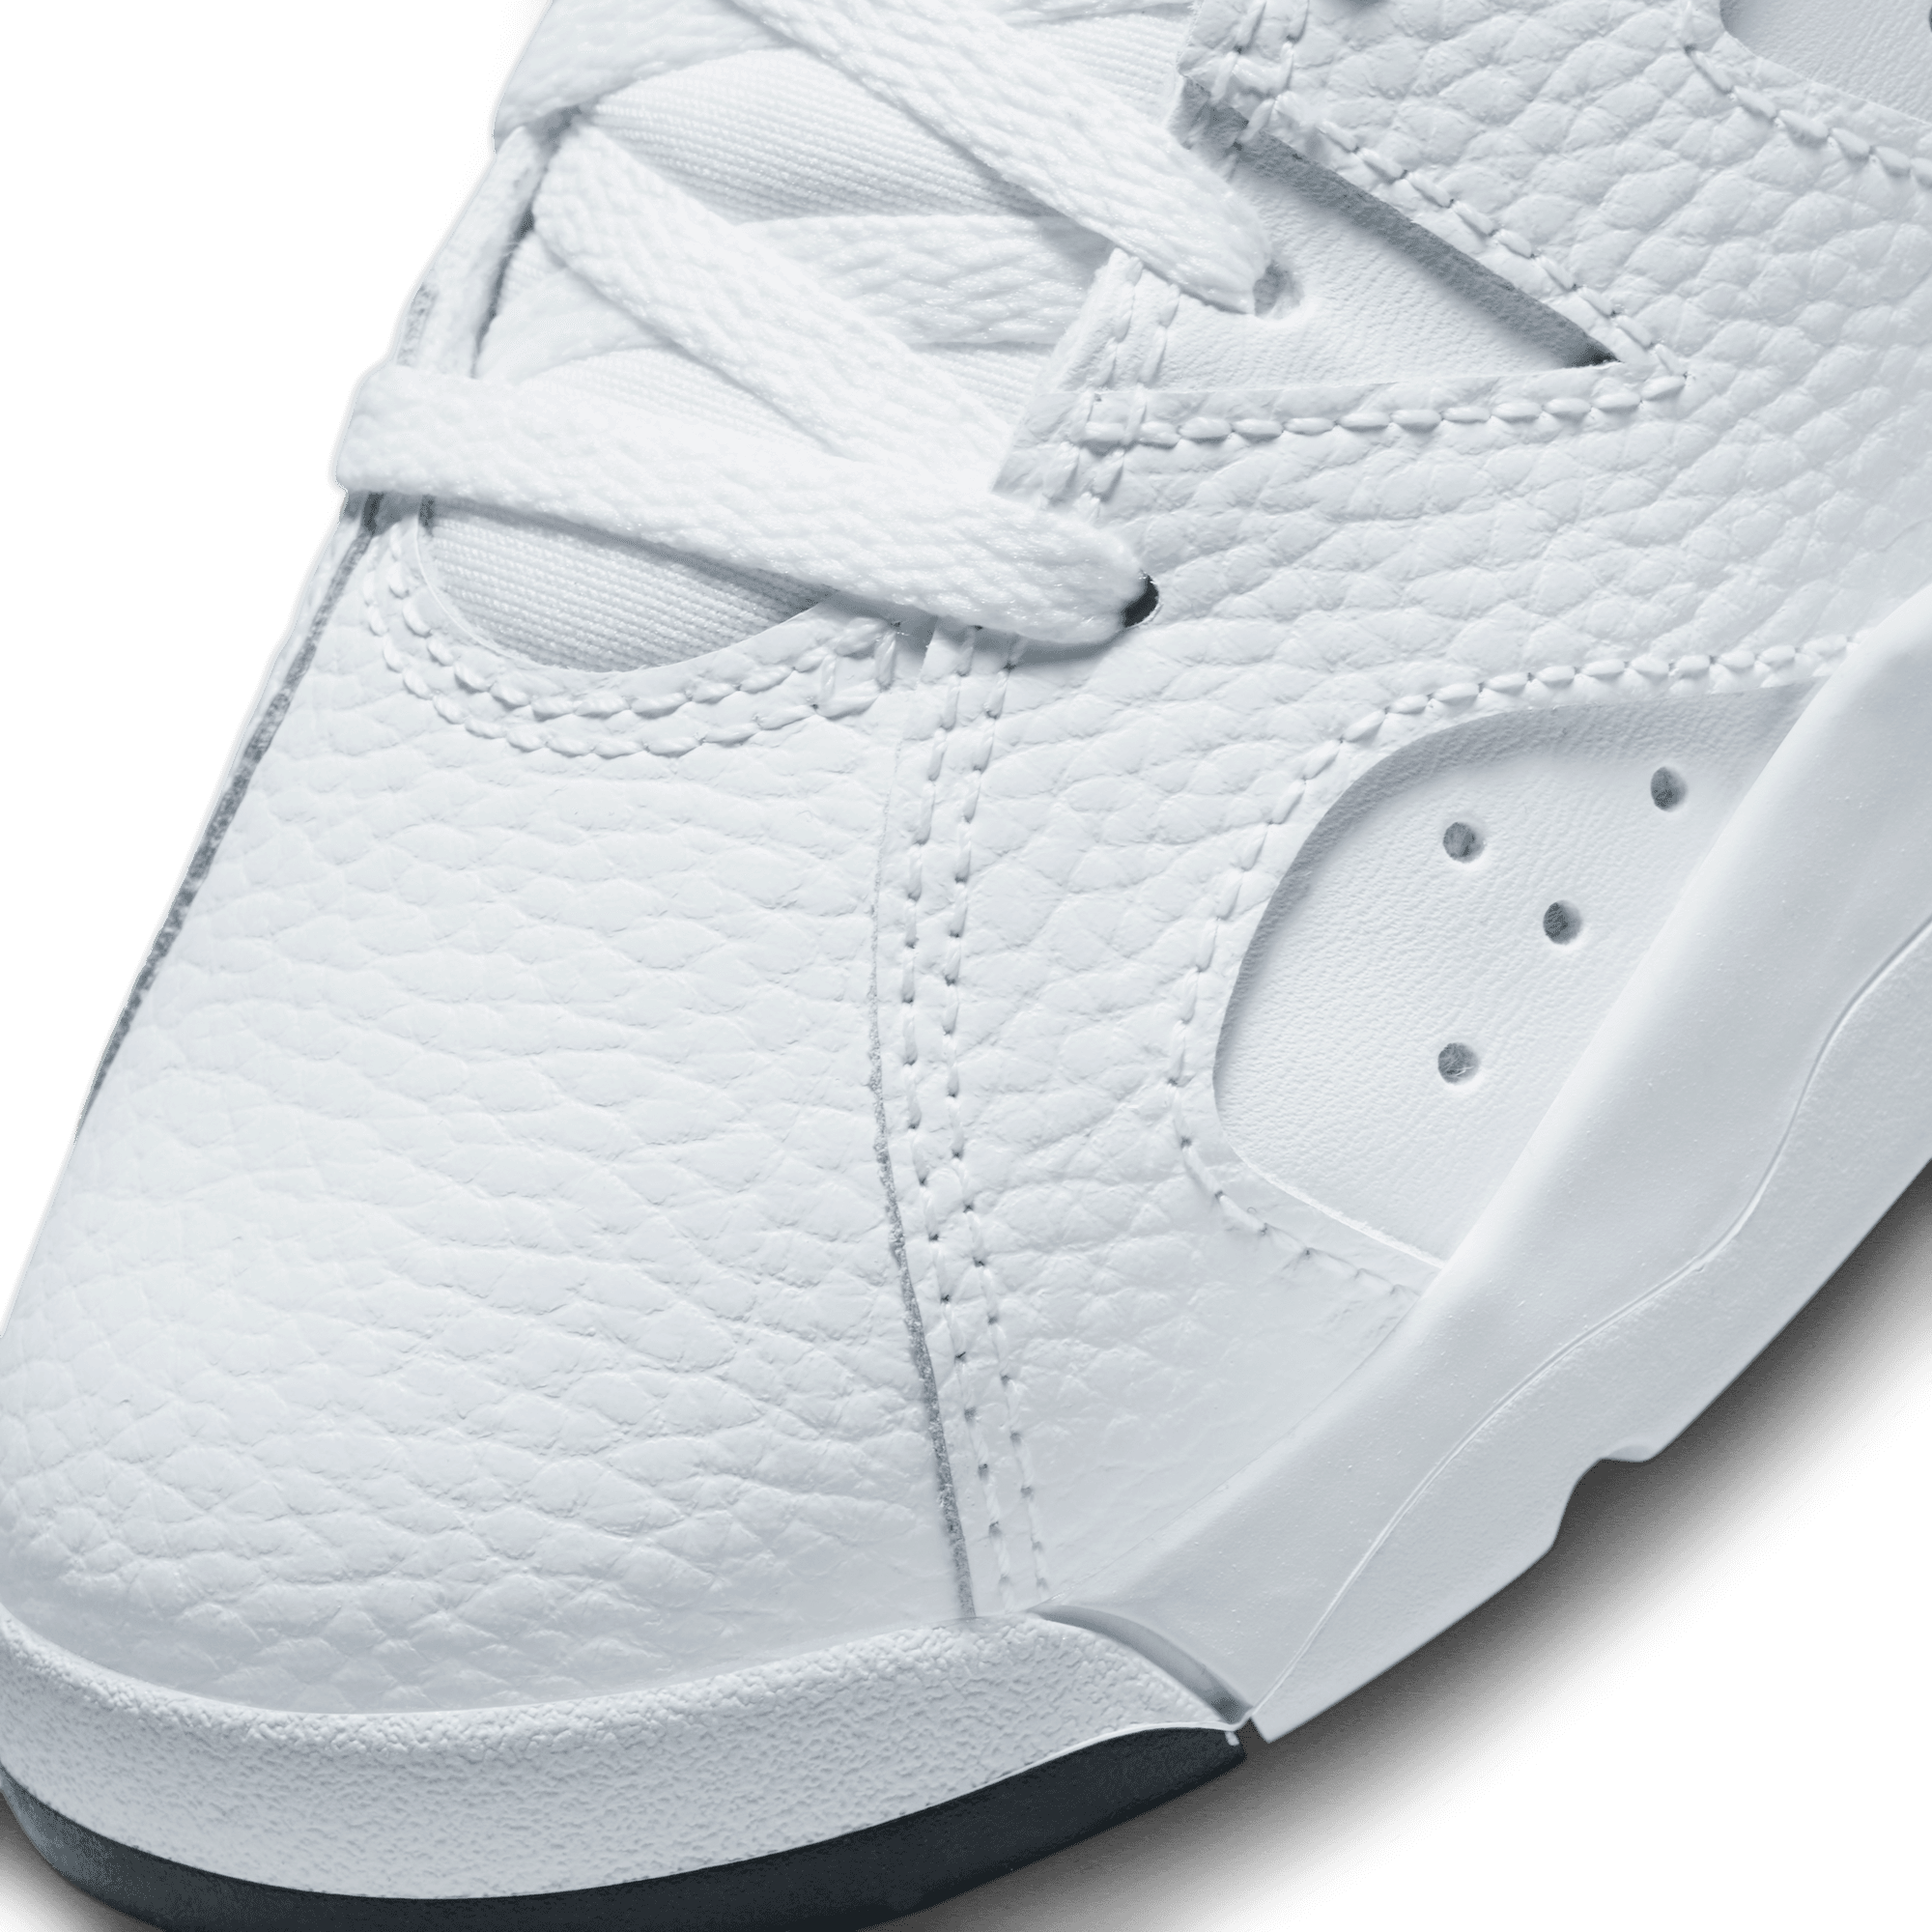 Nike Air Jordan 6 Retro (PS)